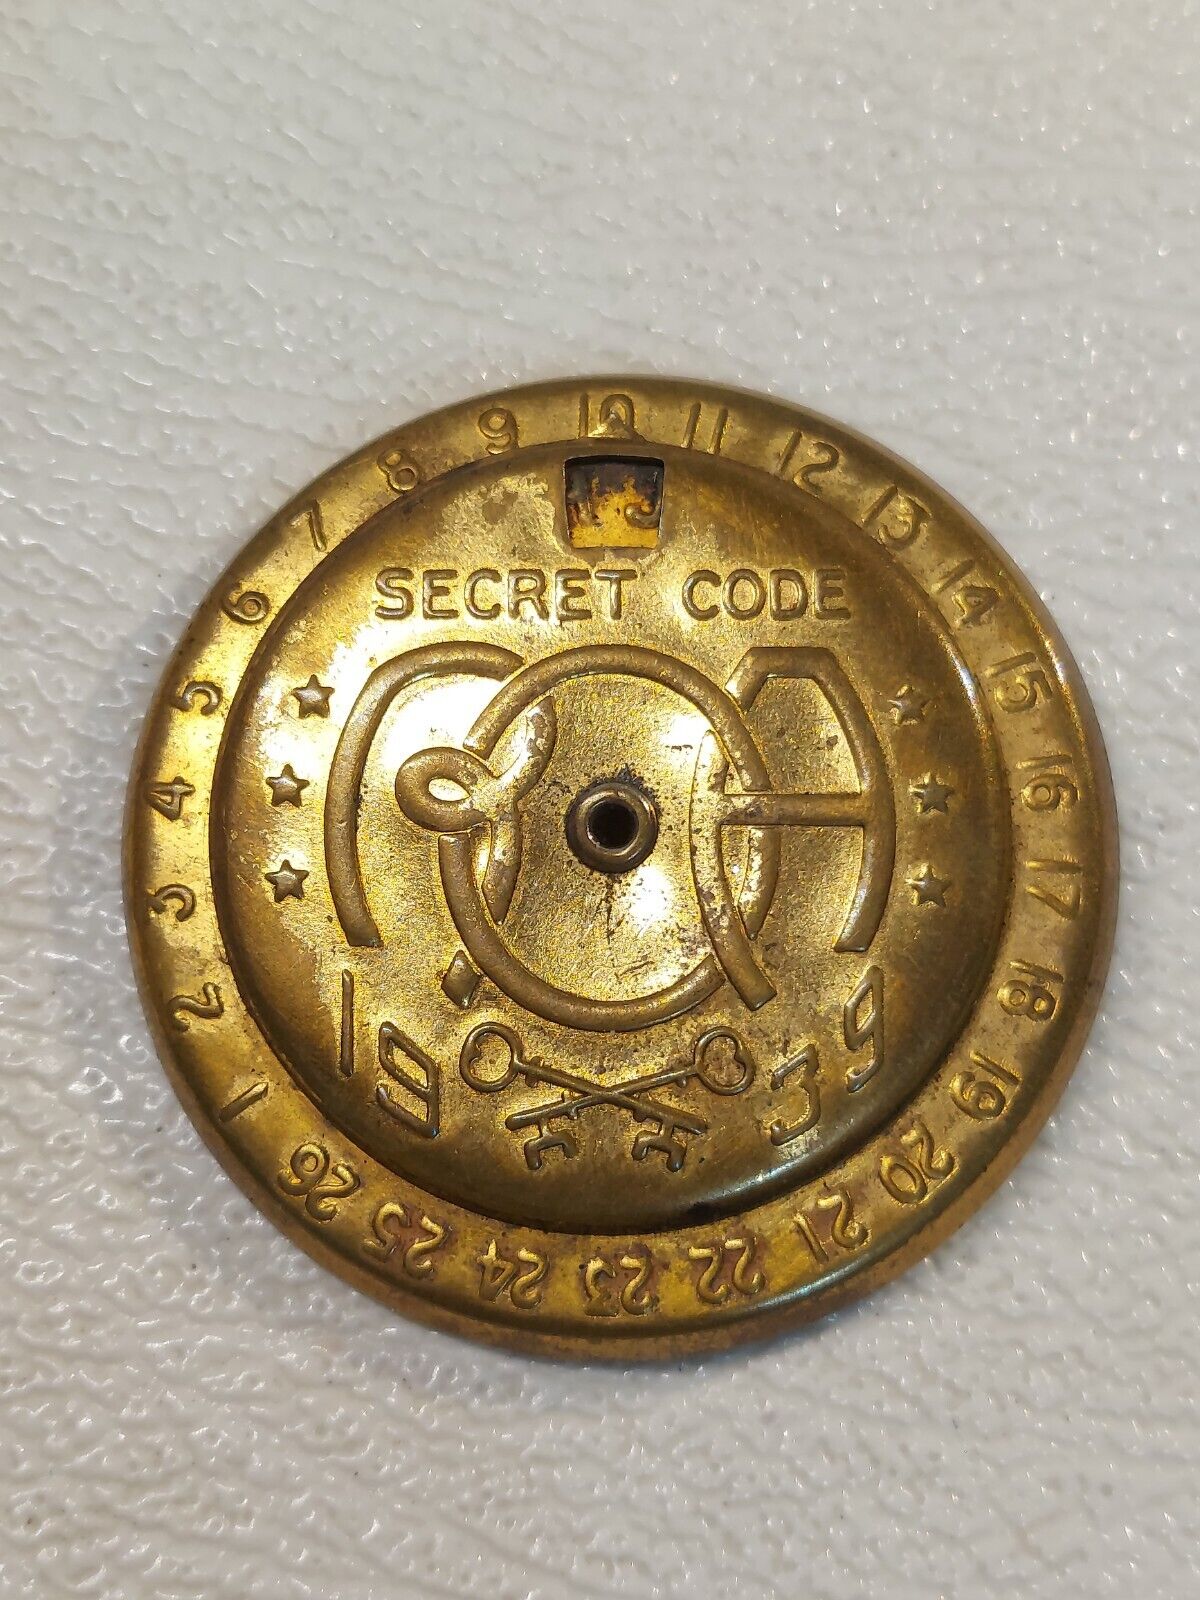 ROA Radio Little Orphan Annie Decoder Secret Code Pin Ovaltine 1939 Premium